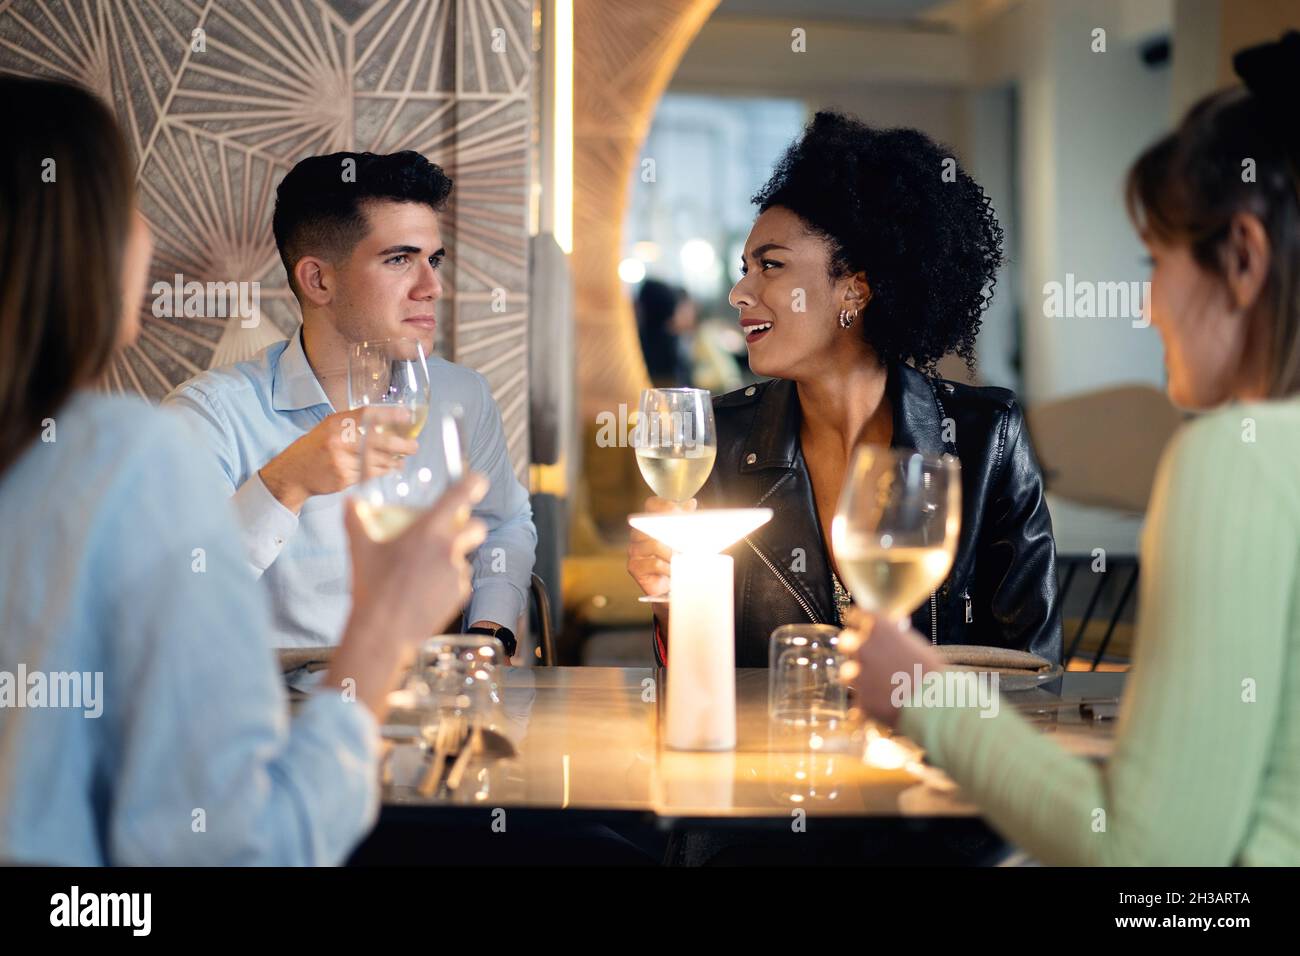 Vielfältige Gruppe von Freunden, die sich unterhalten und Weißwein trinken. Schöne junge Leute haben Spaß in der stilvollen Bar/Restaurant. Stockfoto